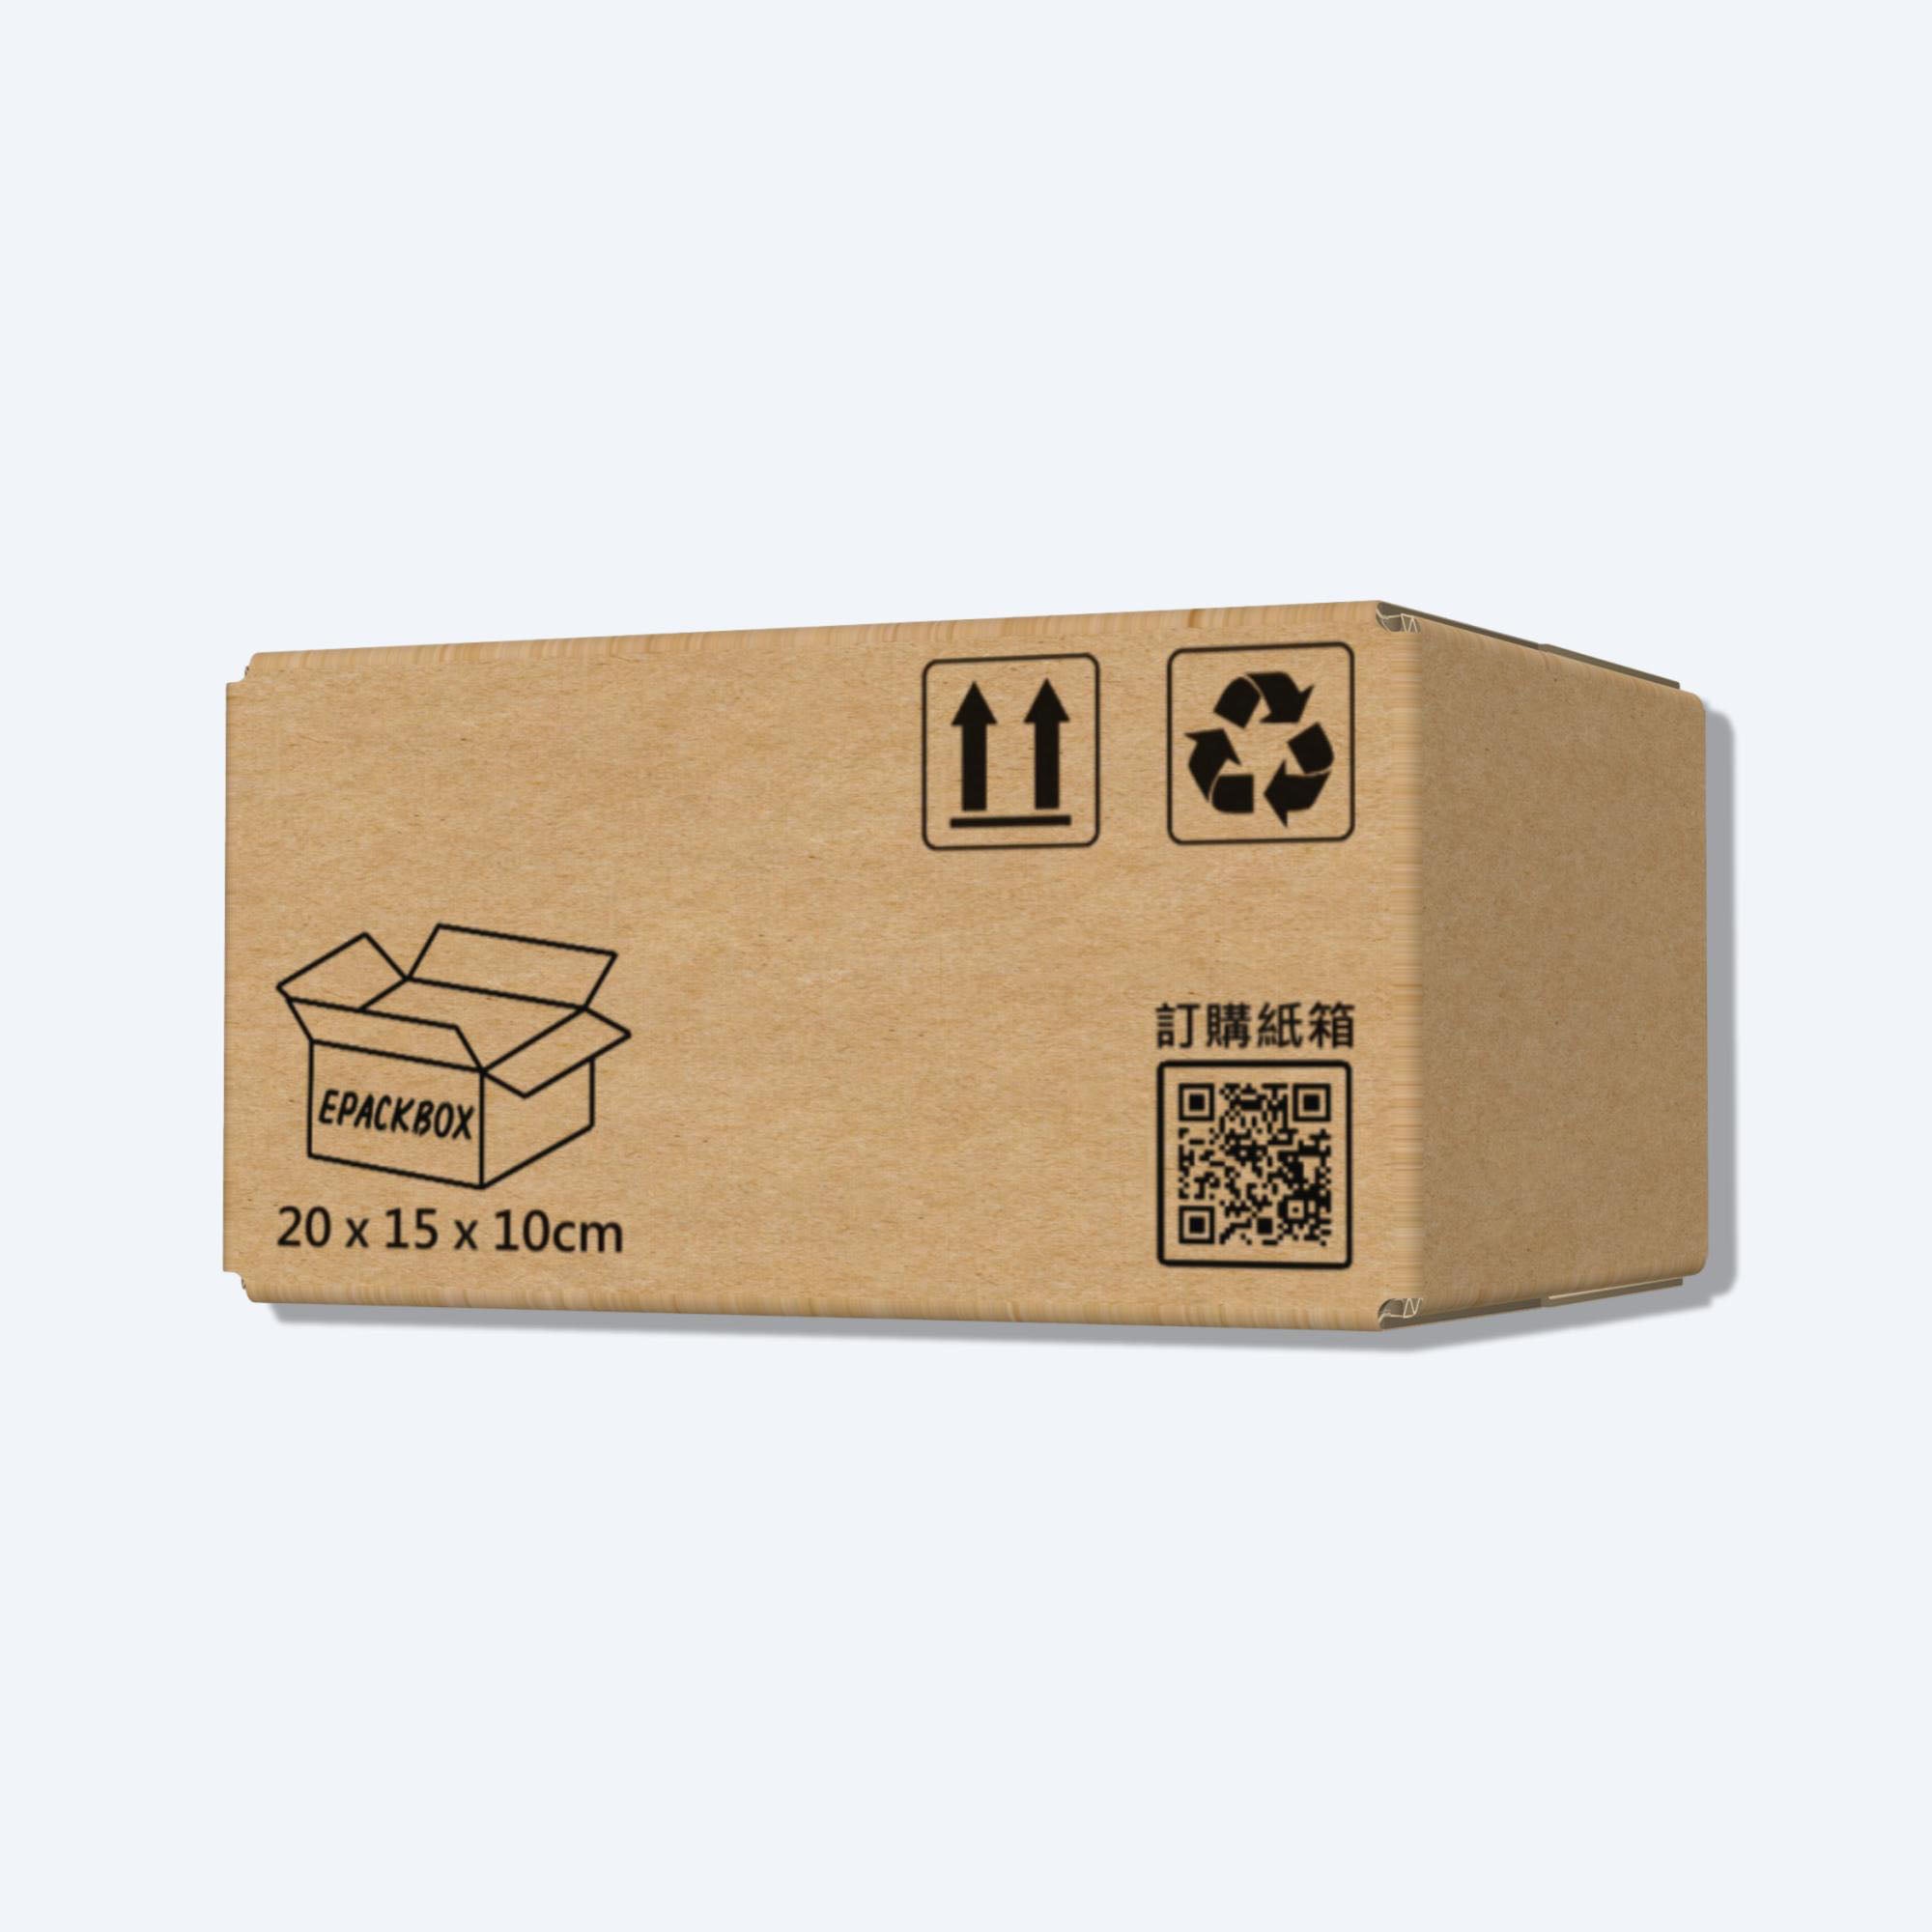 順豐F1尺寸紙箱展開圖，其尺寸符合順豐速運的包裝標準，展示折疊和組裝方式。